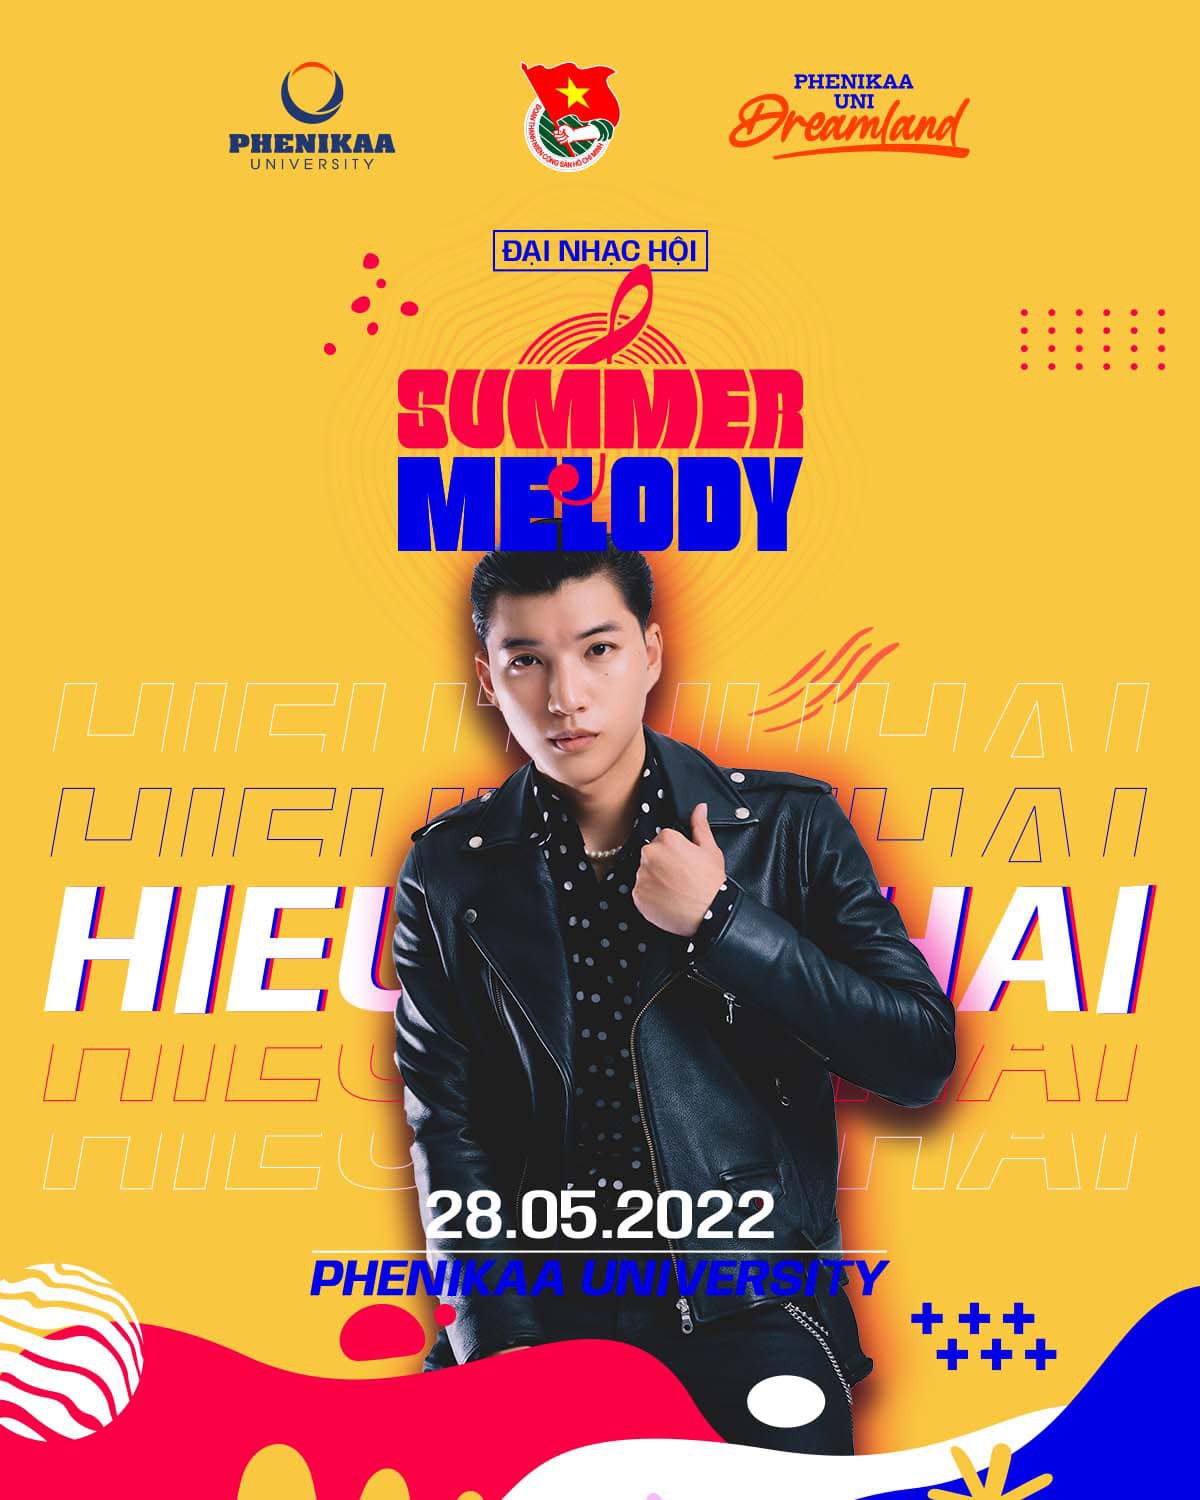 Đại nhạc hội Summer Melody 2022 - Trúc Nhân - Hieuthuhai - Rtee - Only5 Band - Wunit